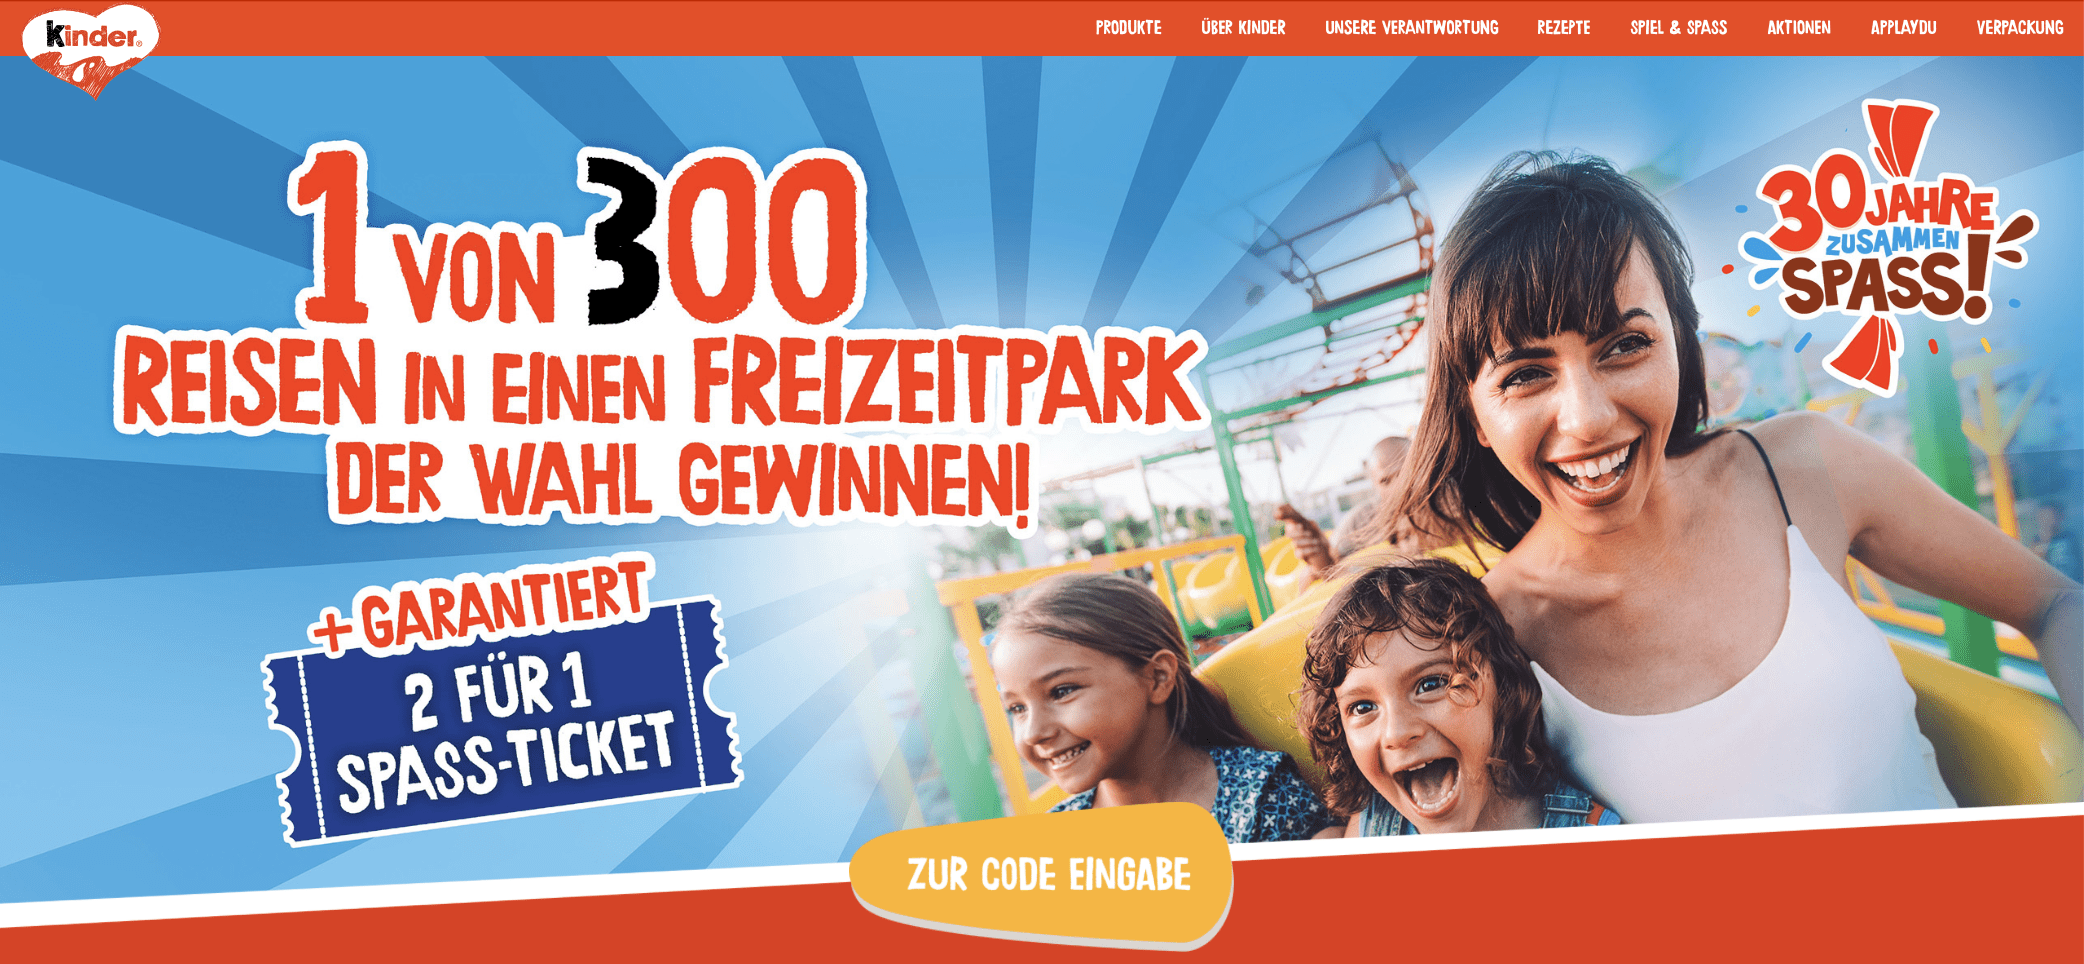 case_Gewinnspiel- Cases FMCG Süßwaren & Snacks Bons_freizeitpark-gewinnspiel